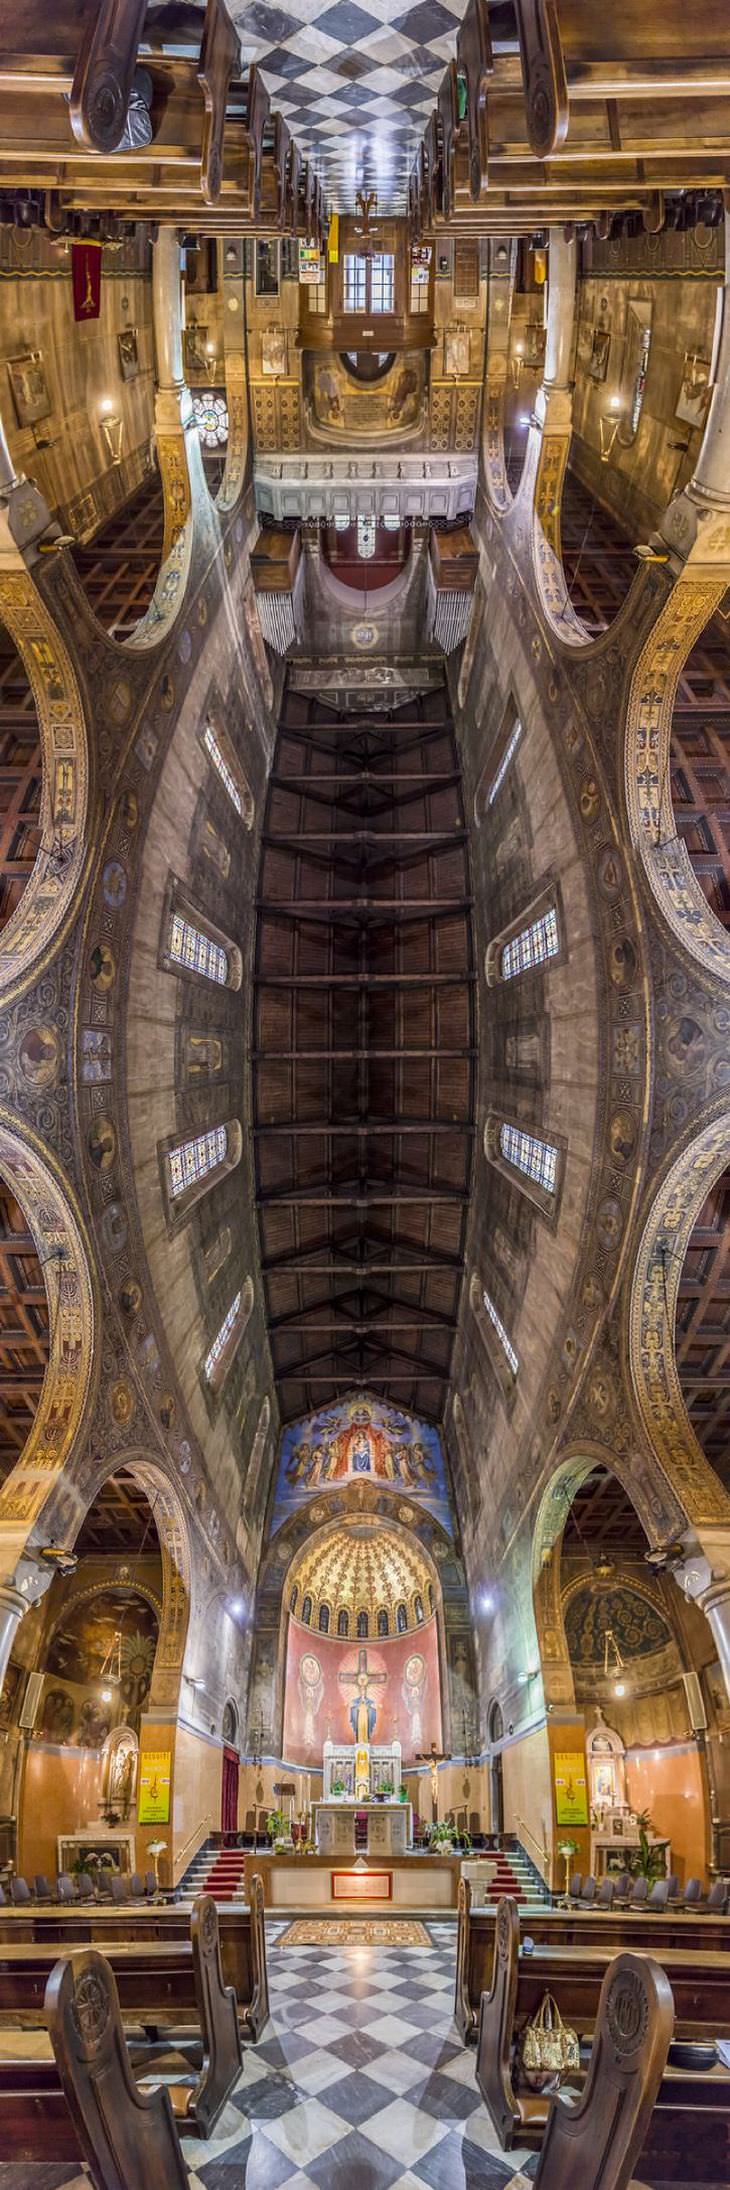 church ceilings